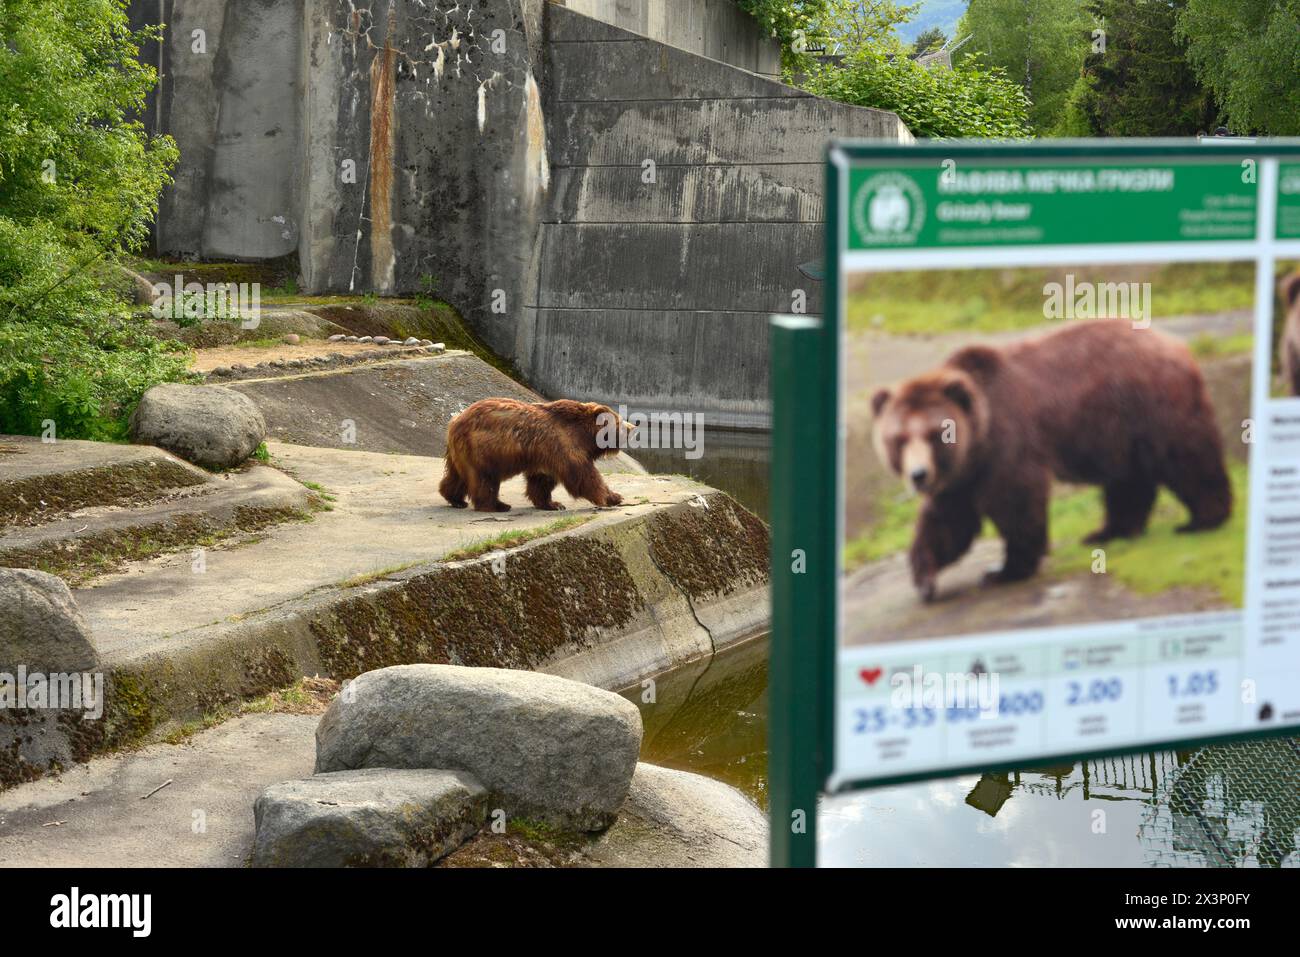 Ours grizzli Ursus arctos horribilis ou ours brun d'Amérique du Nord en captivité au zoo de Sofia, Sofia Bulgarie, Europe de l'est, Balkans, UE Banque D'Images